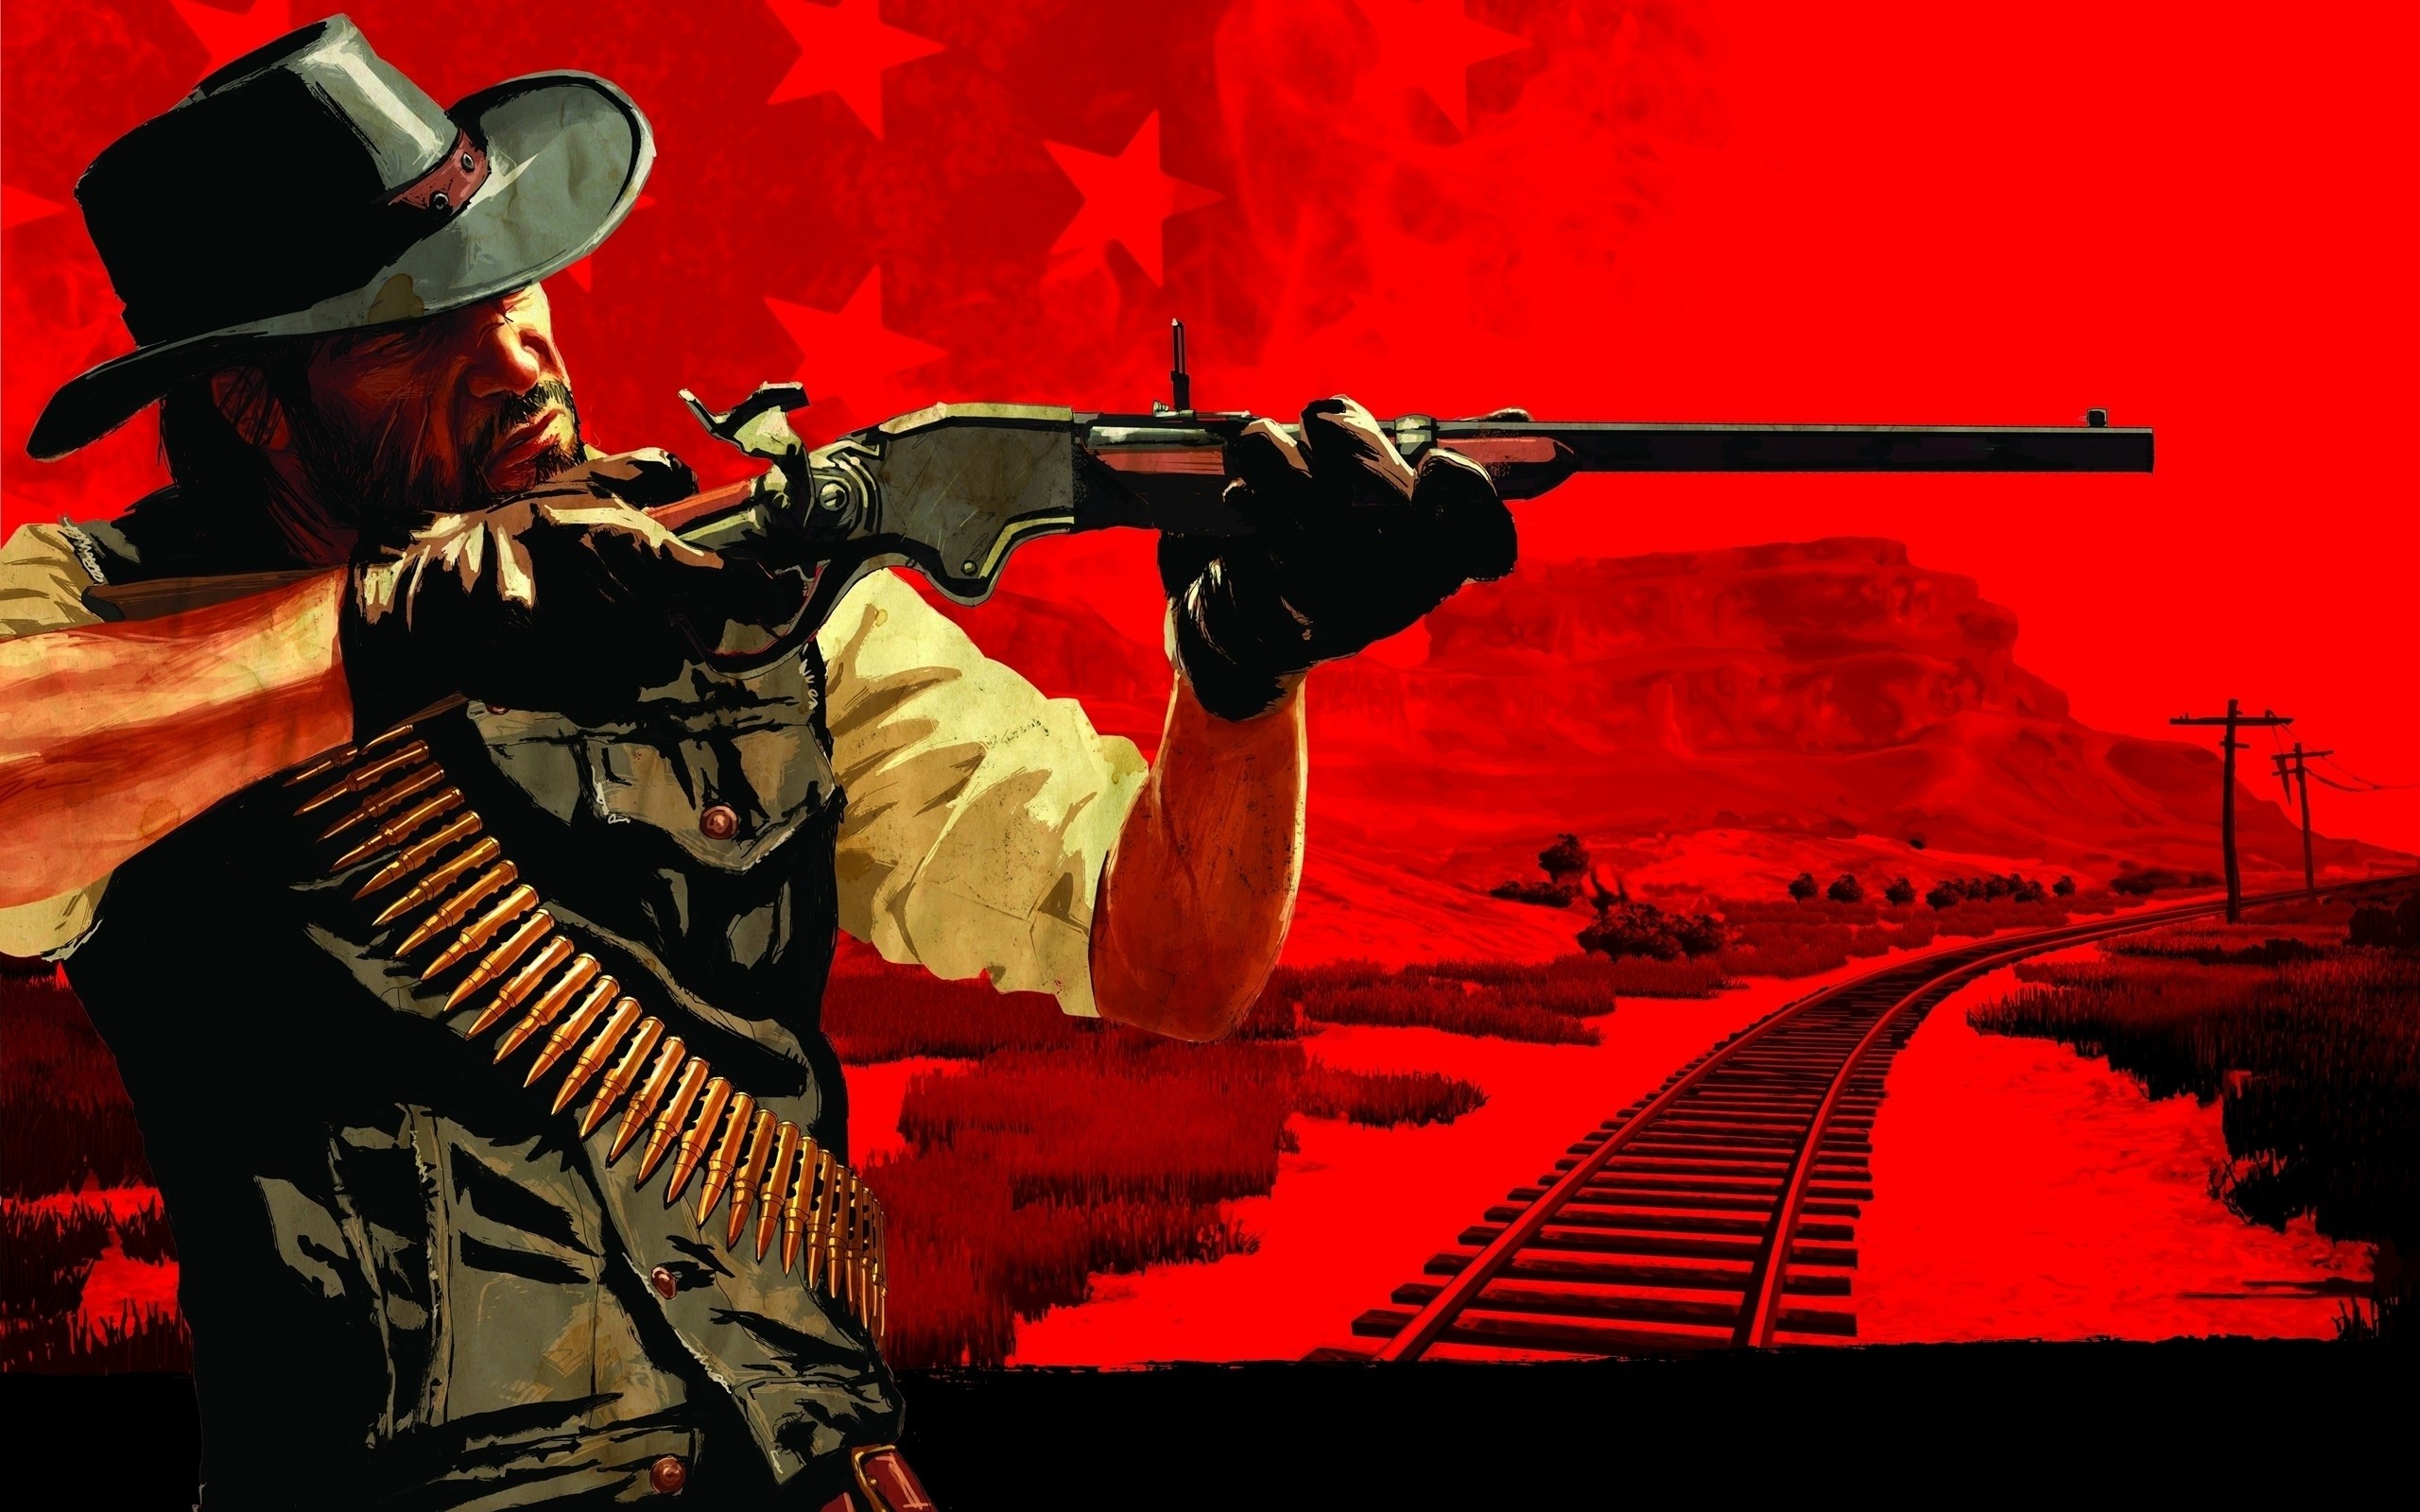 2560x1600 Video games western red dead redemption artwork wild west wallpaper